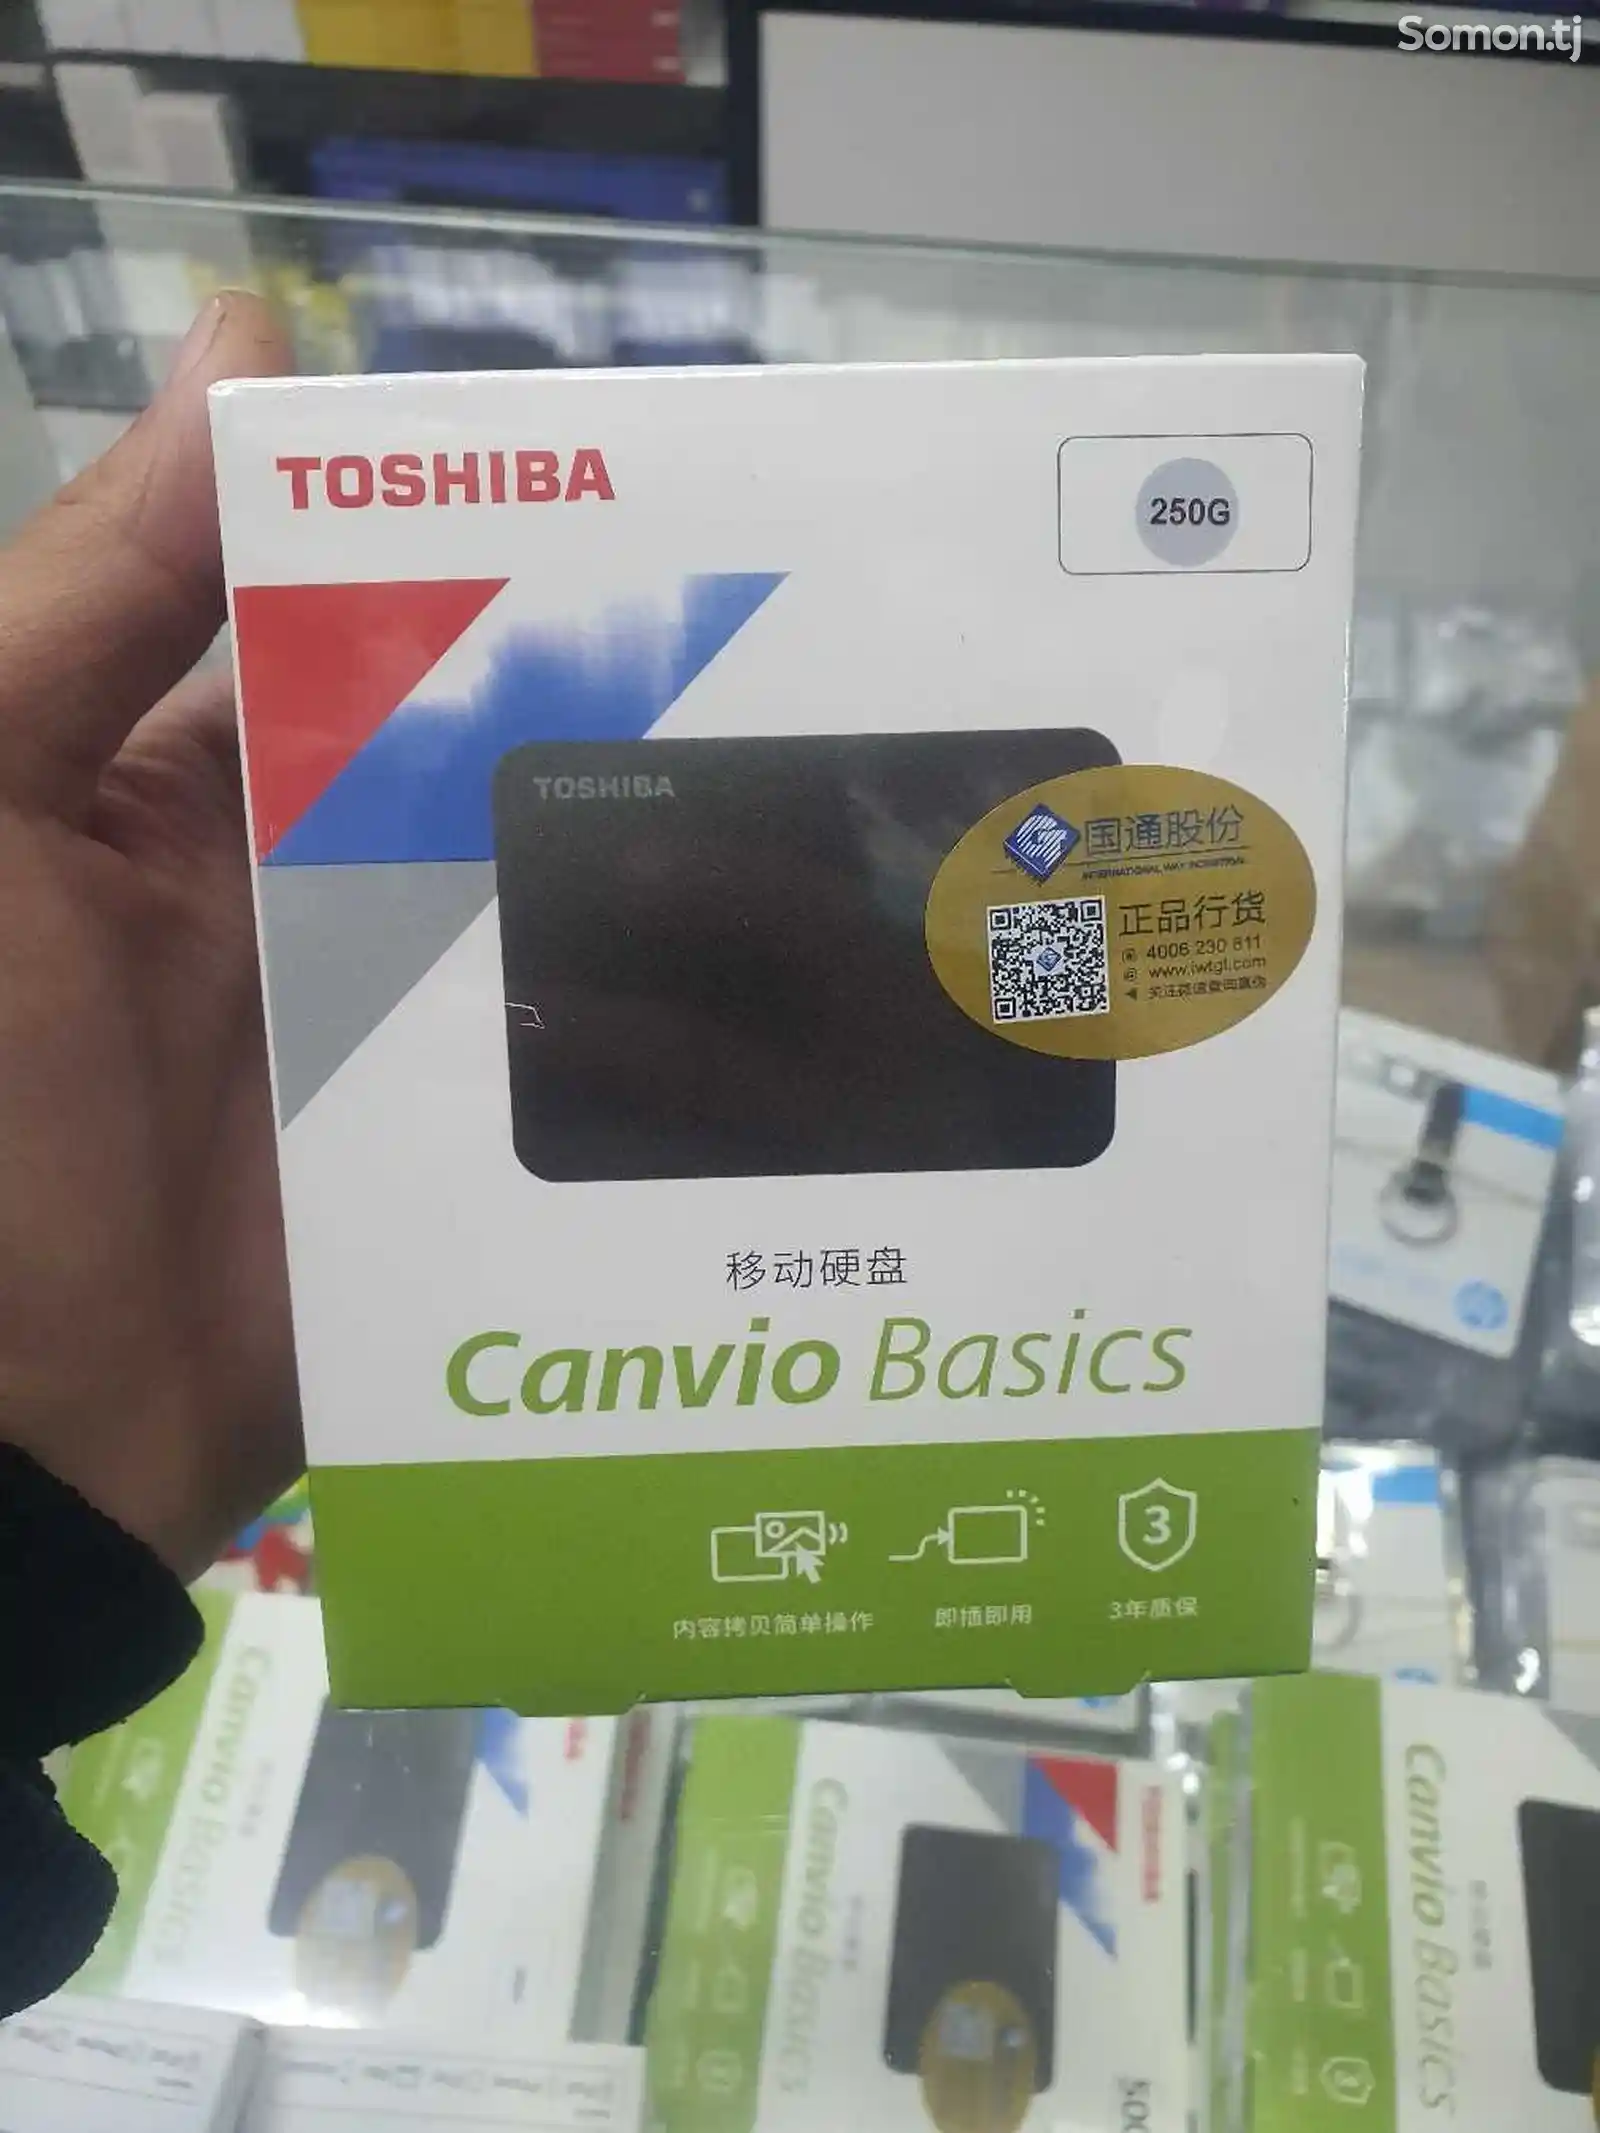 Флешка Toshiba